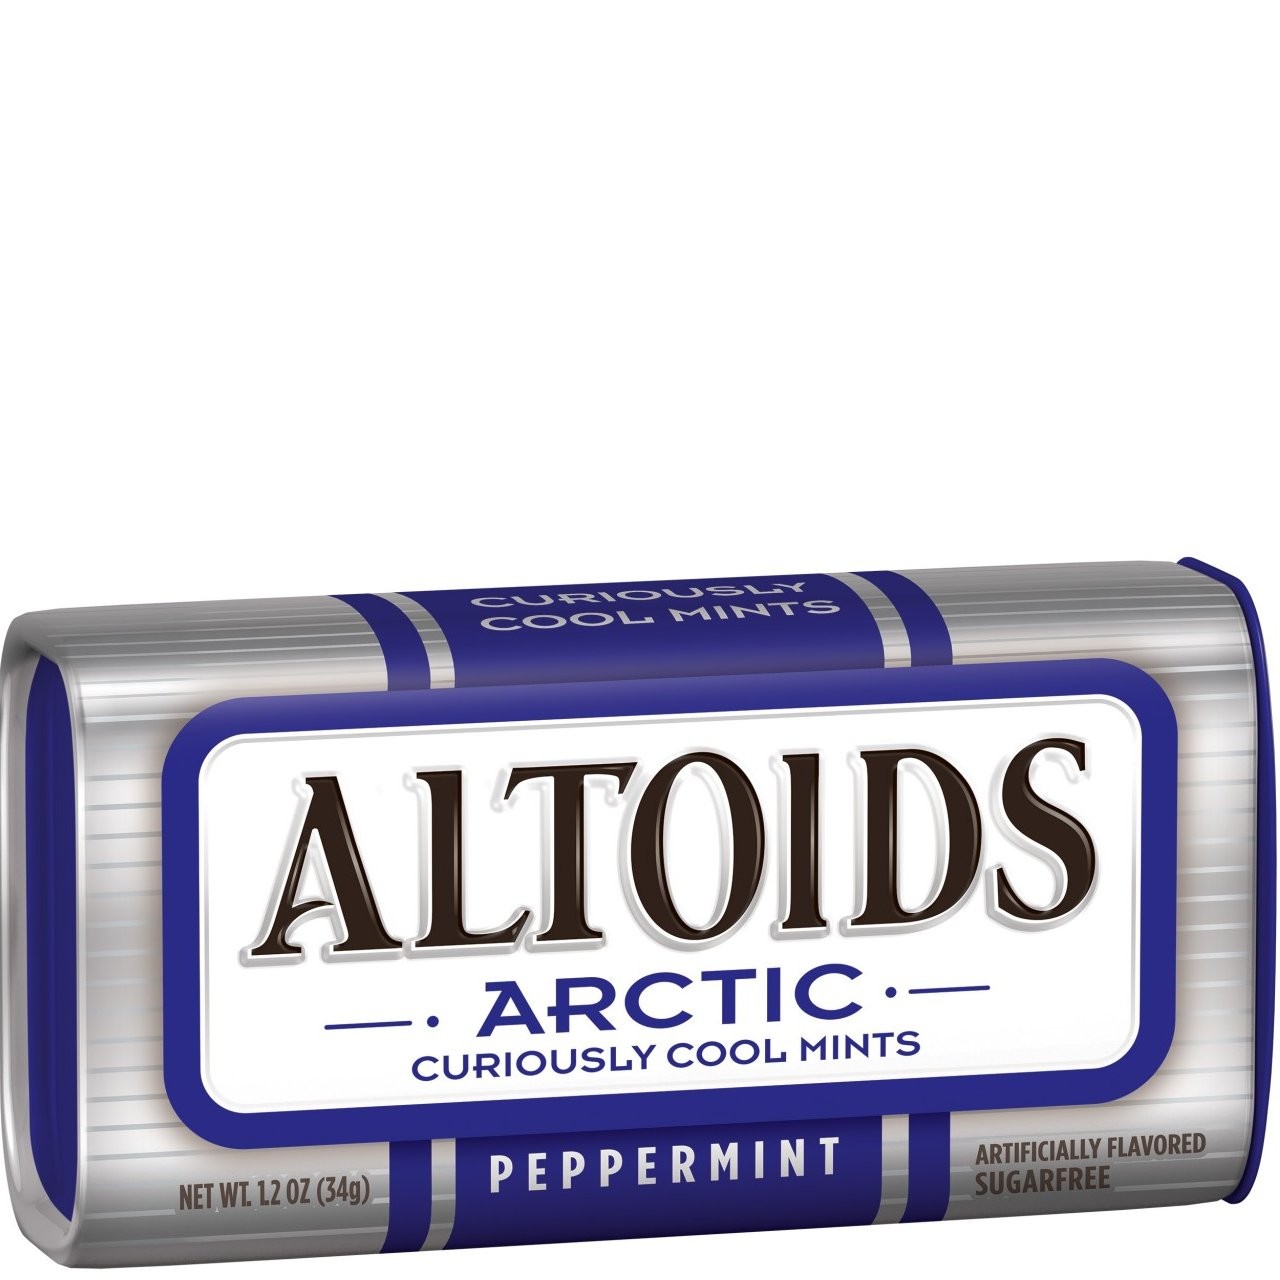 ALTOIDS ARCTIC PEPPERMINT 34g